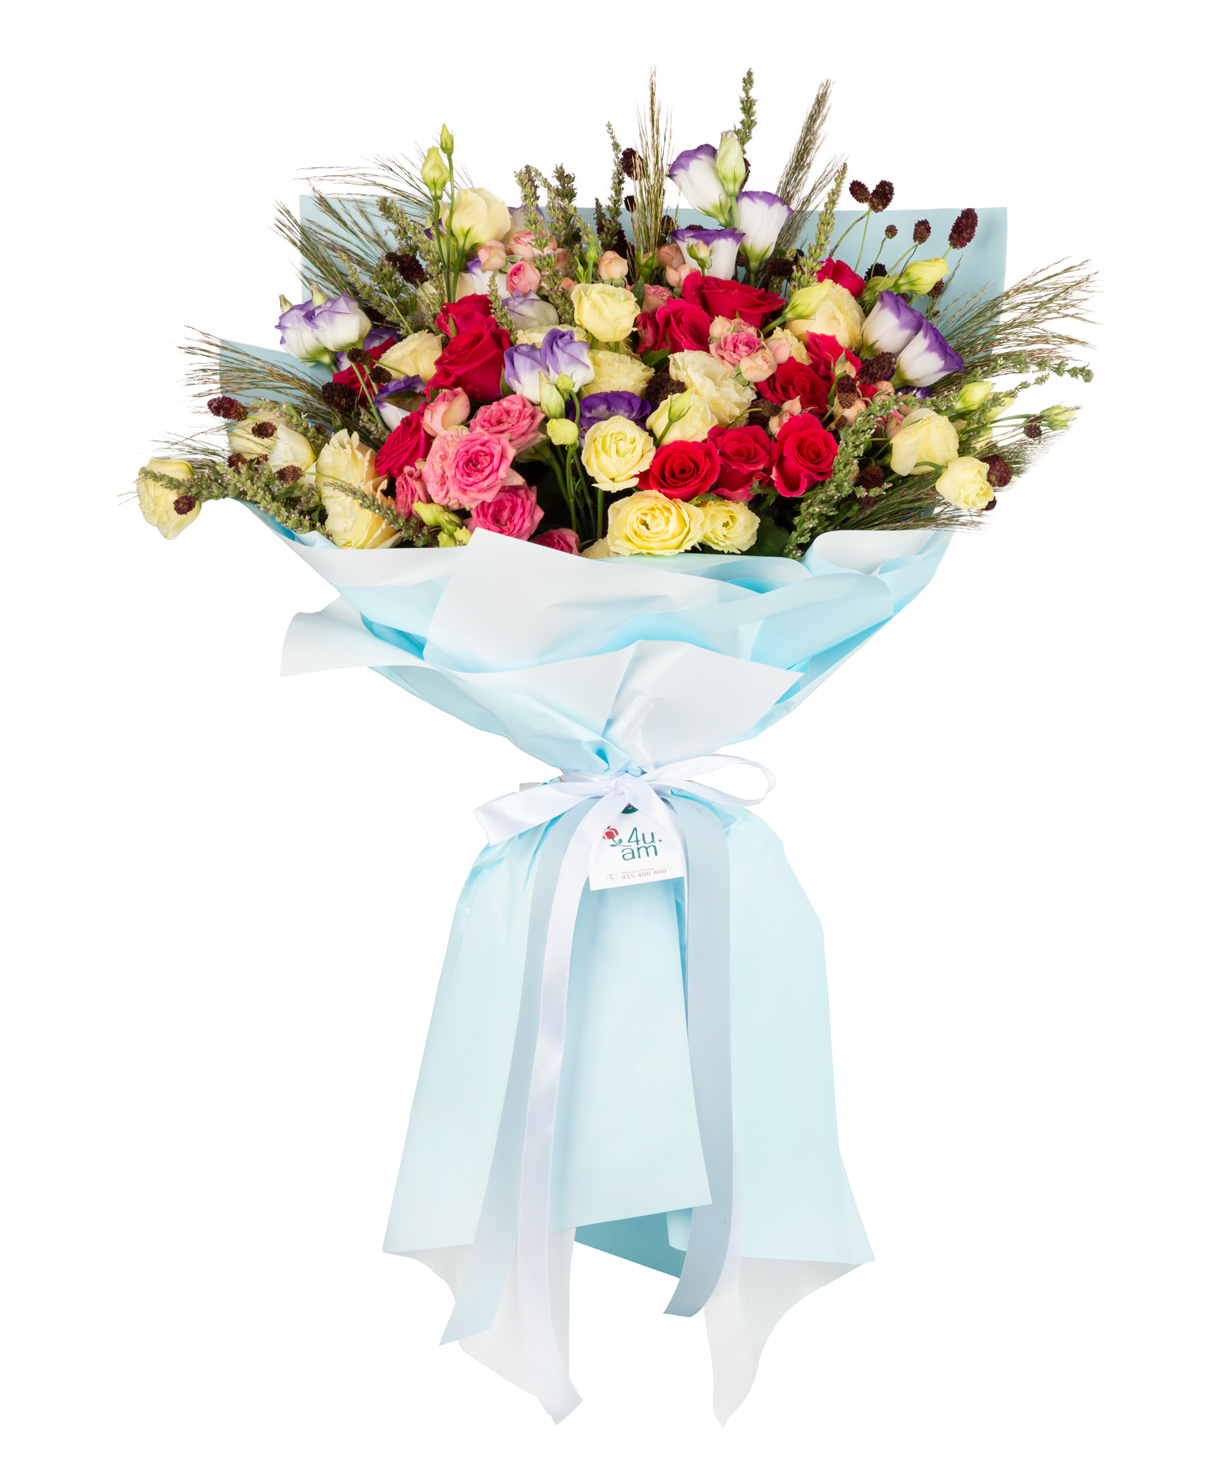 Ծաղկեփունջ «Blue fligh» վարդերով, փնջային վարդերով, լիզիանտուսներով և չորածաղիկներով